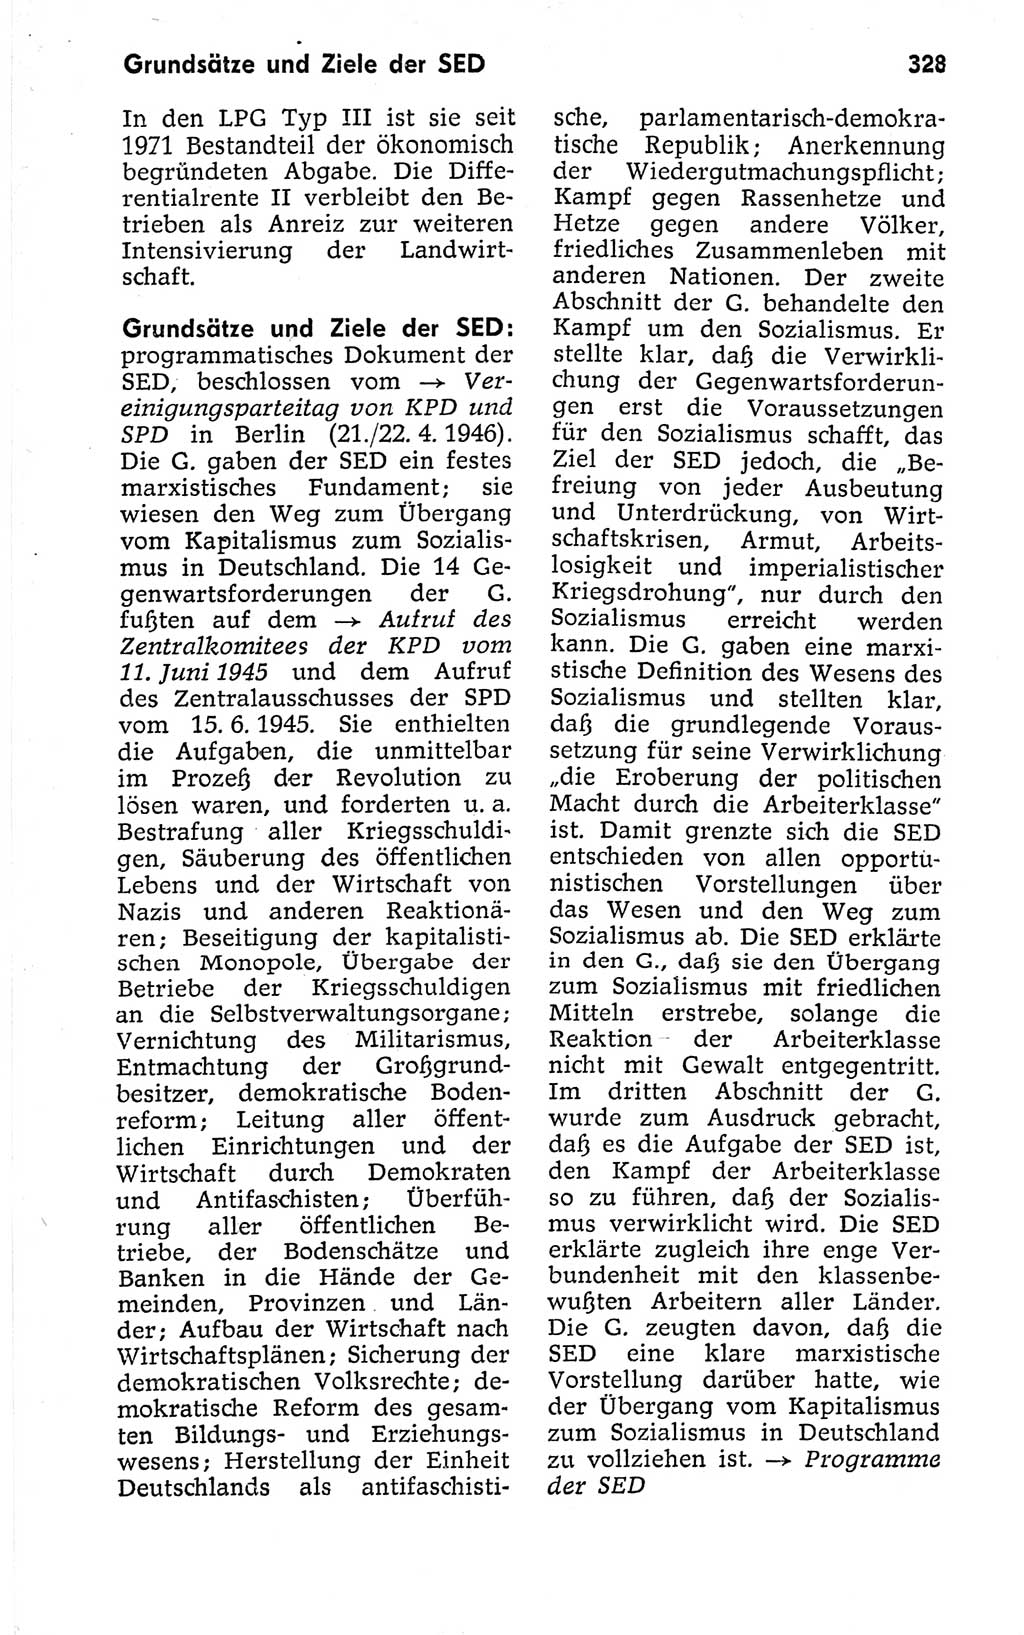 Kleines politisches Wörterbuch [Deutsche Demokratische Republik (DDR)] 1973, Seite 328 (Kl. pol. Wb. DDR 1973, S. 328)